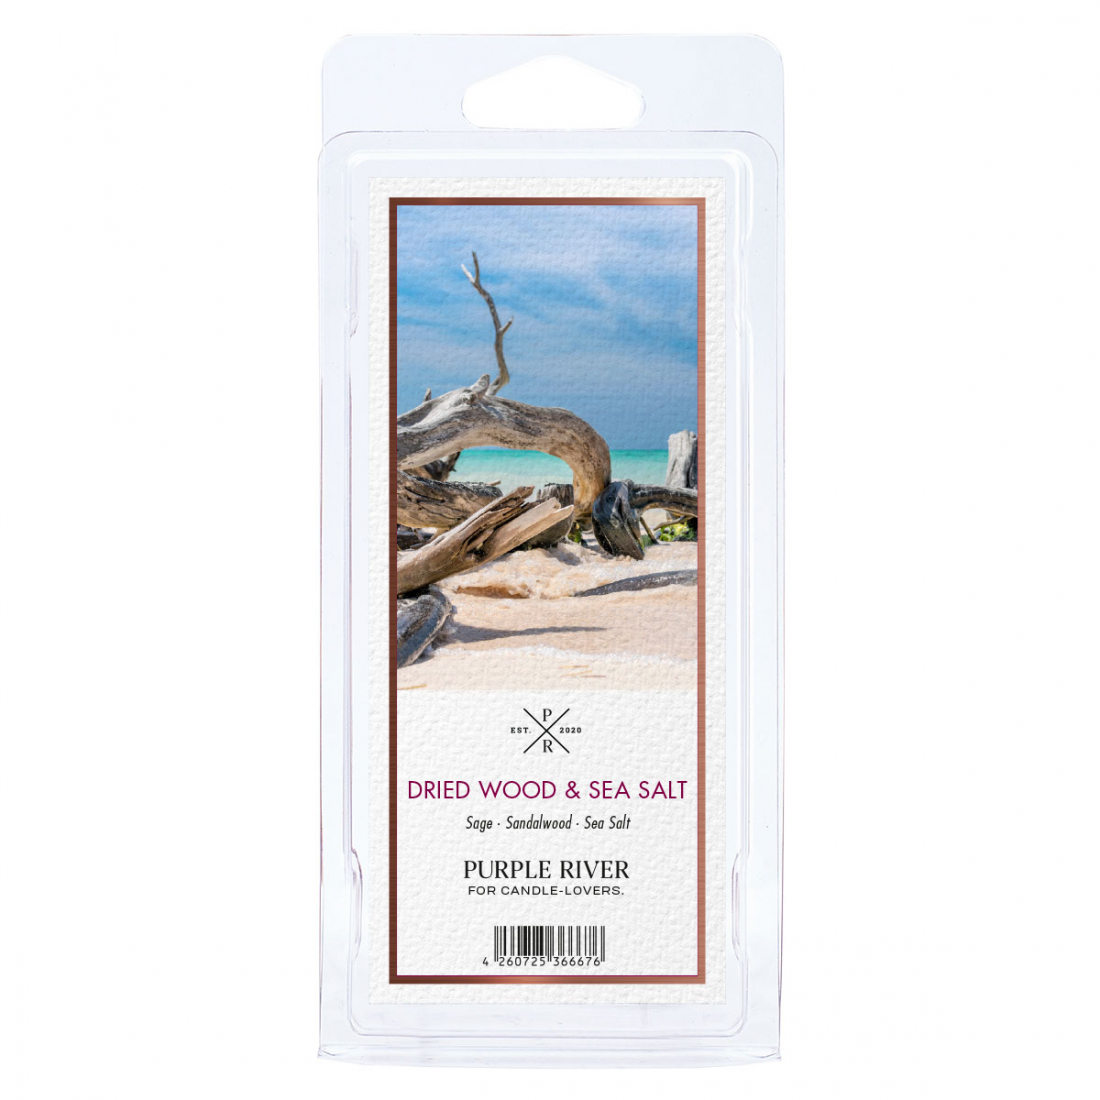 'Dried Wood & Sea Salt' Duftendes Wachs - 50 g